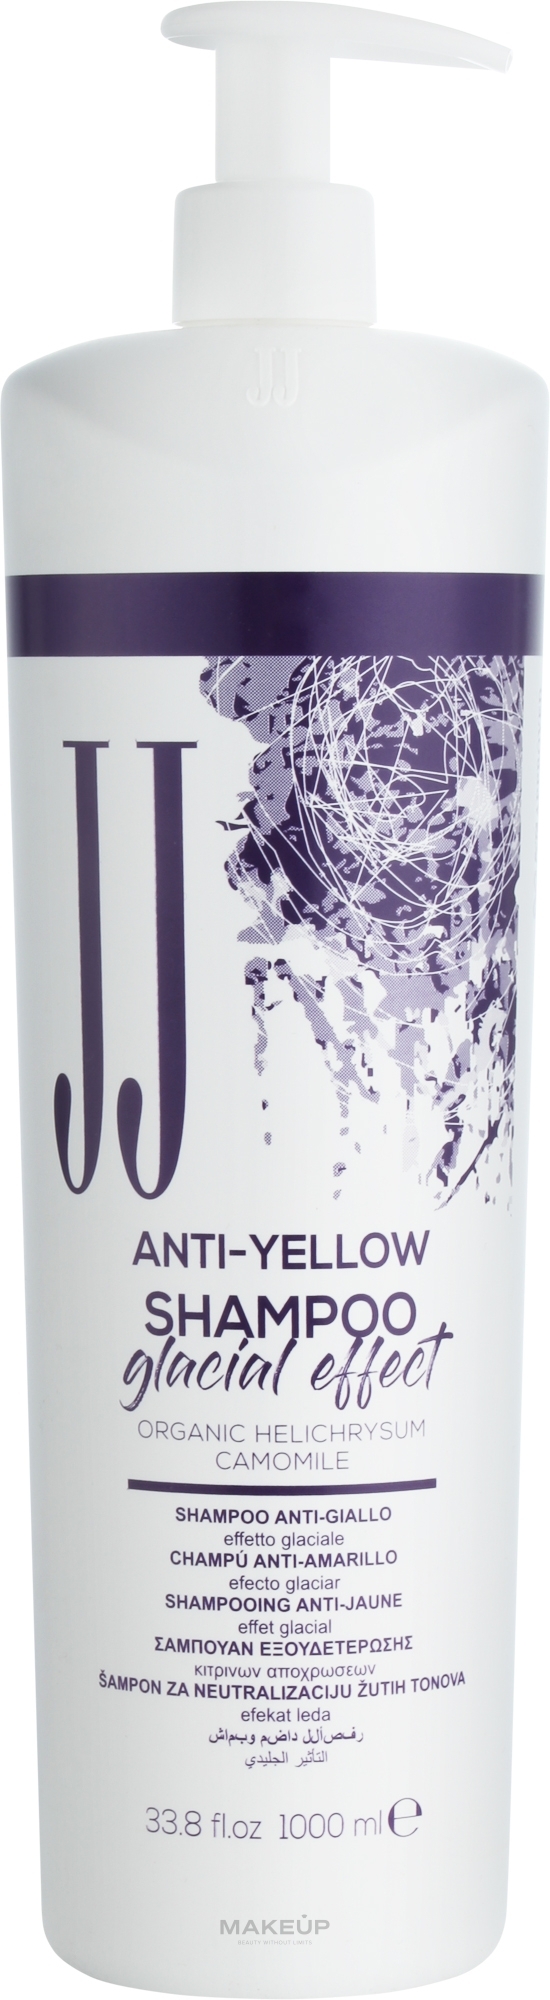 Шампунь від жовтизни волосся "Крижаний ефект" - JJ Anti-Yellow Shampoo Glacial Effect — фото 1000ml